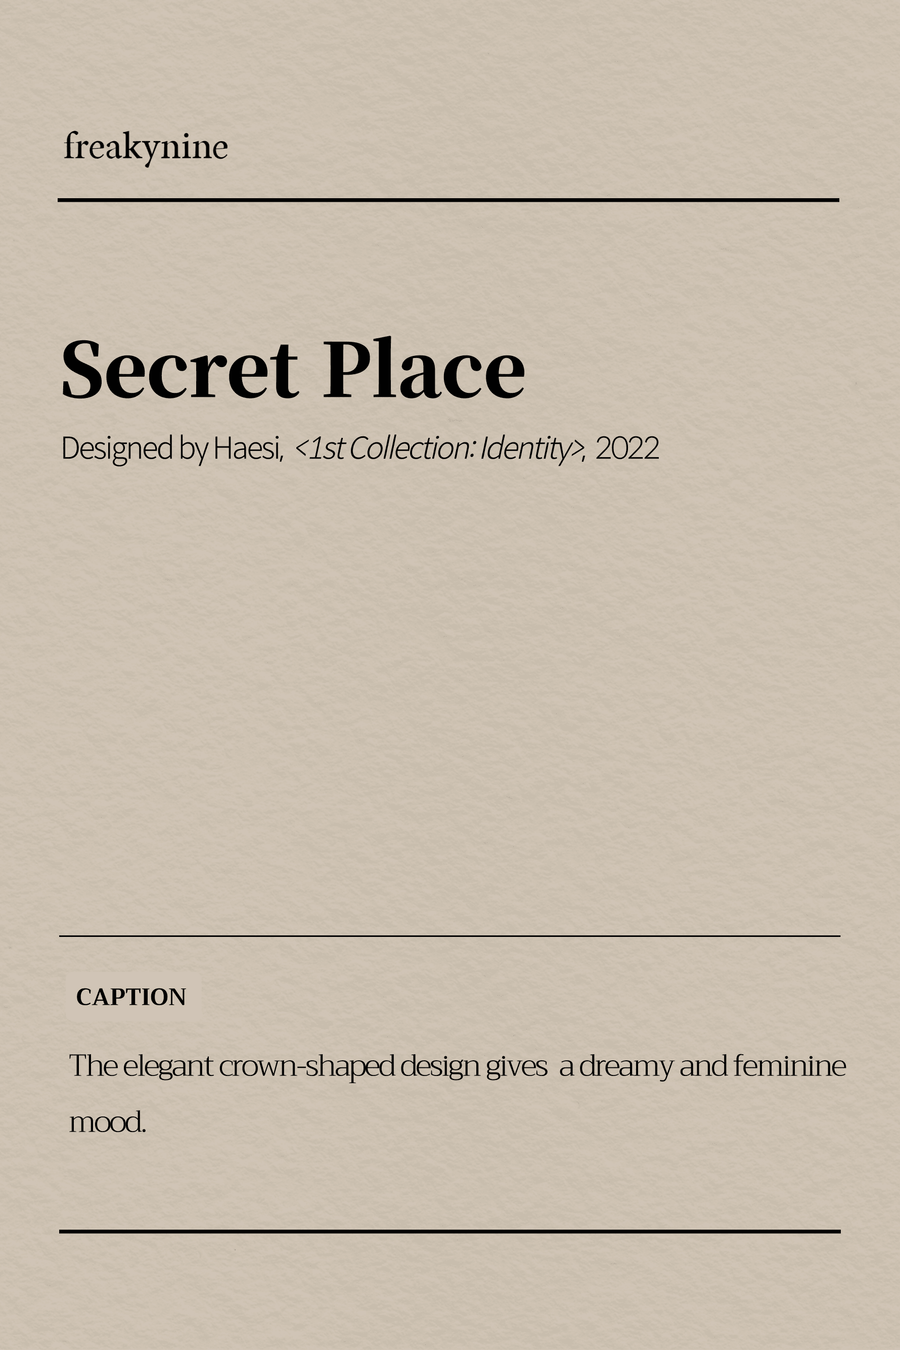 (Haesi) Secret Place (2EA) - freakynine